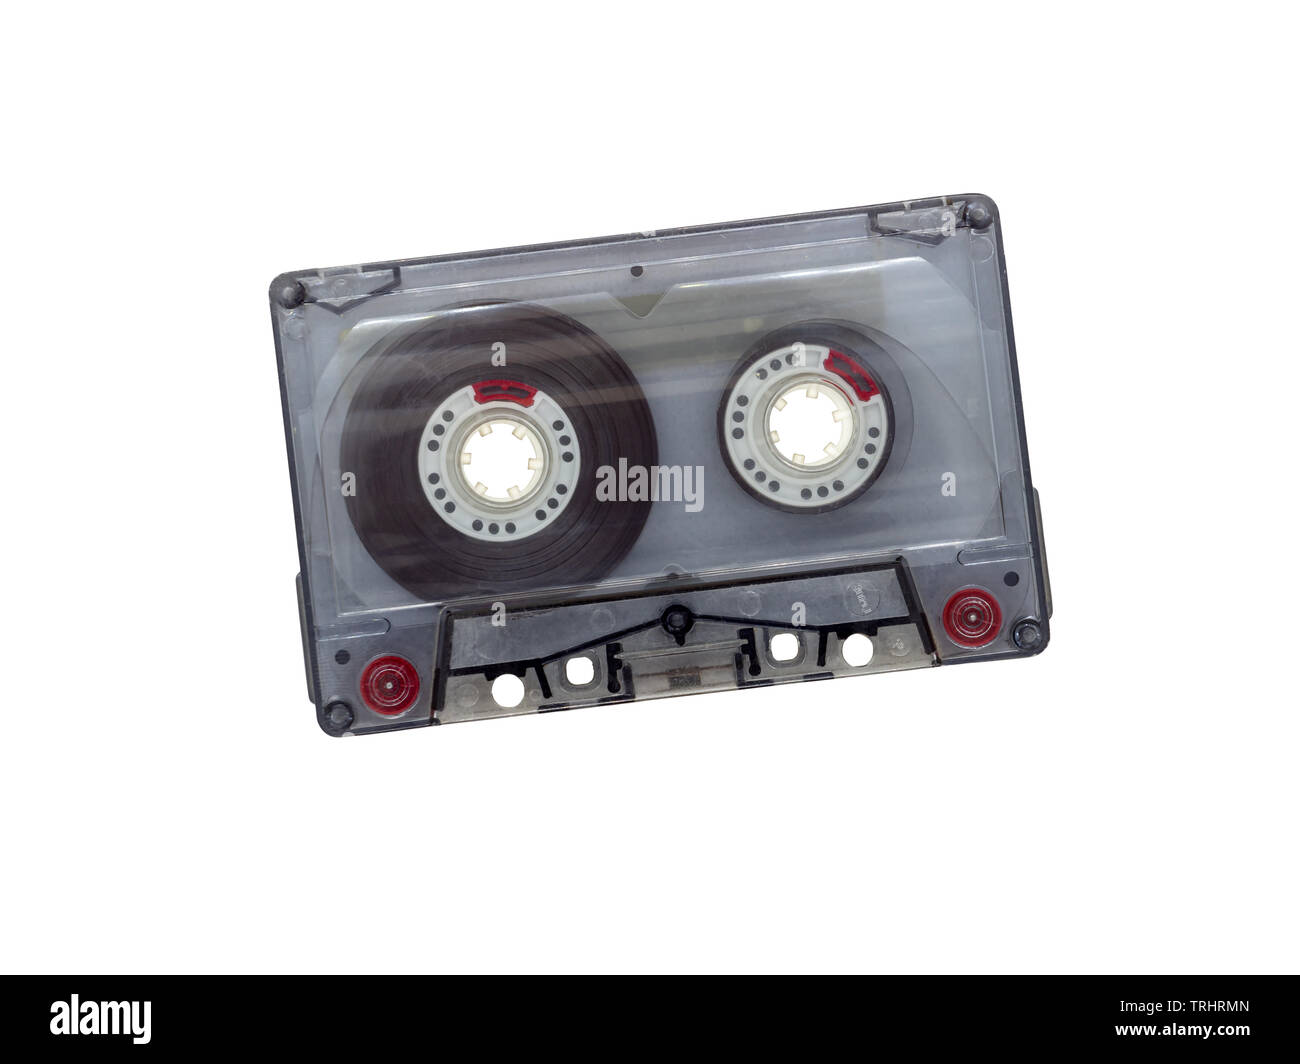 Cassette transparente (Compact, cassette audio, cassette compacte Musicassette (MC)) sur fond blanc Banque D'Images